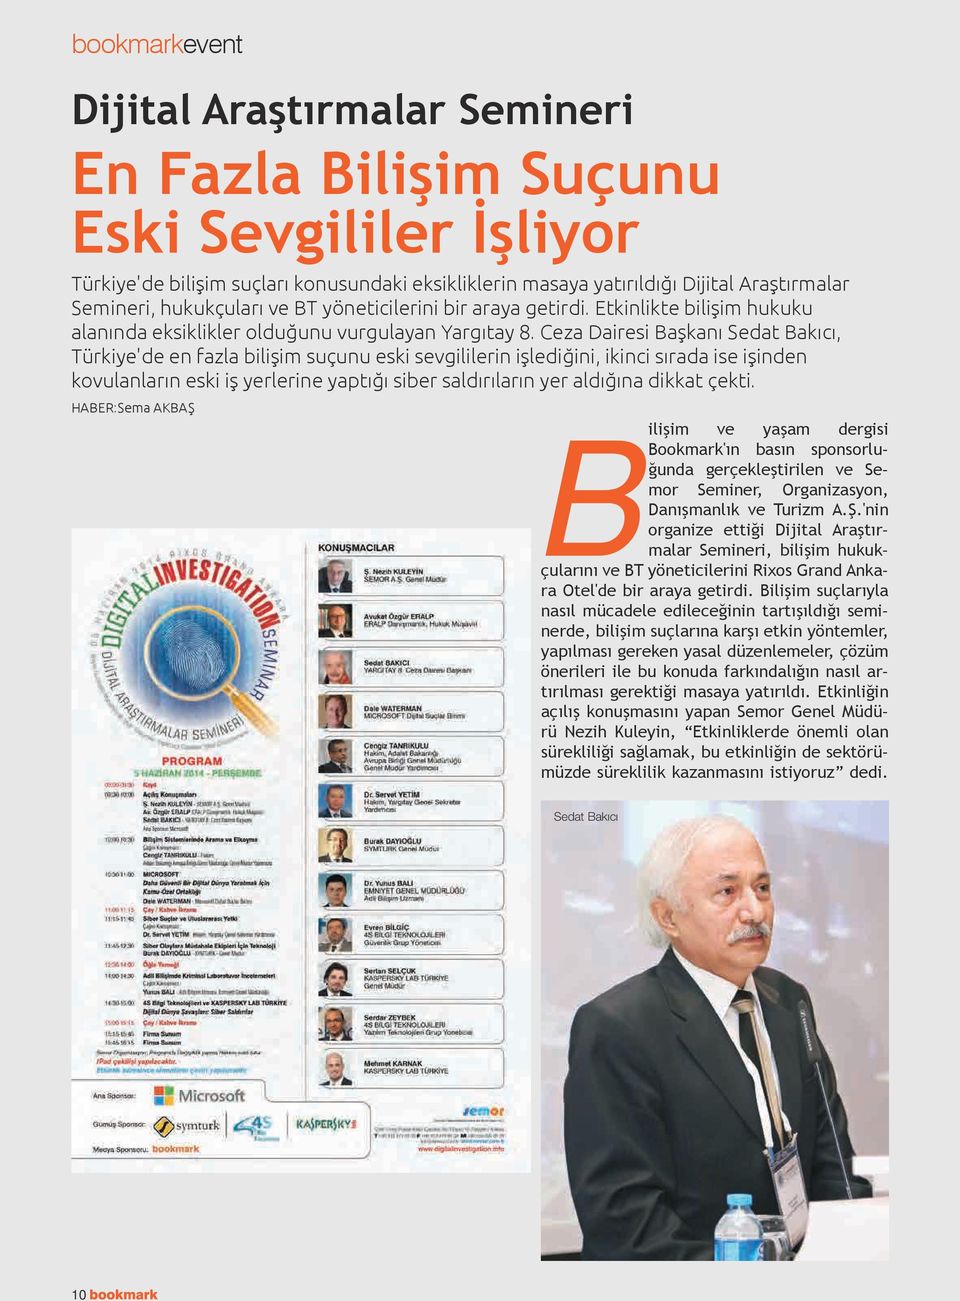 Ceza Dairesi Başkanı Sedat Bakıcı, Türkiye'de en fazla bilişim suçunu eski sevgililerin işlediğini, ikinci sırada ise işinden kovulanların eski iş yerlerine yaptığı siber saldırıların yer aldığına